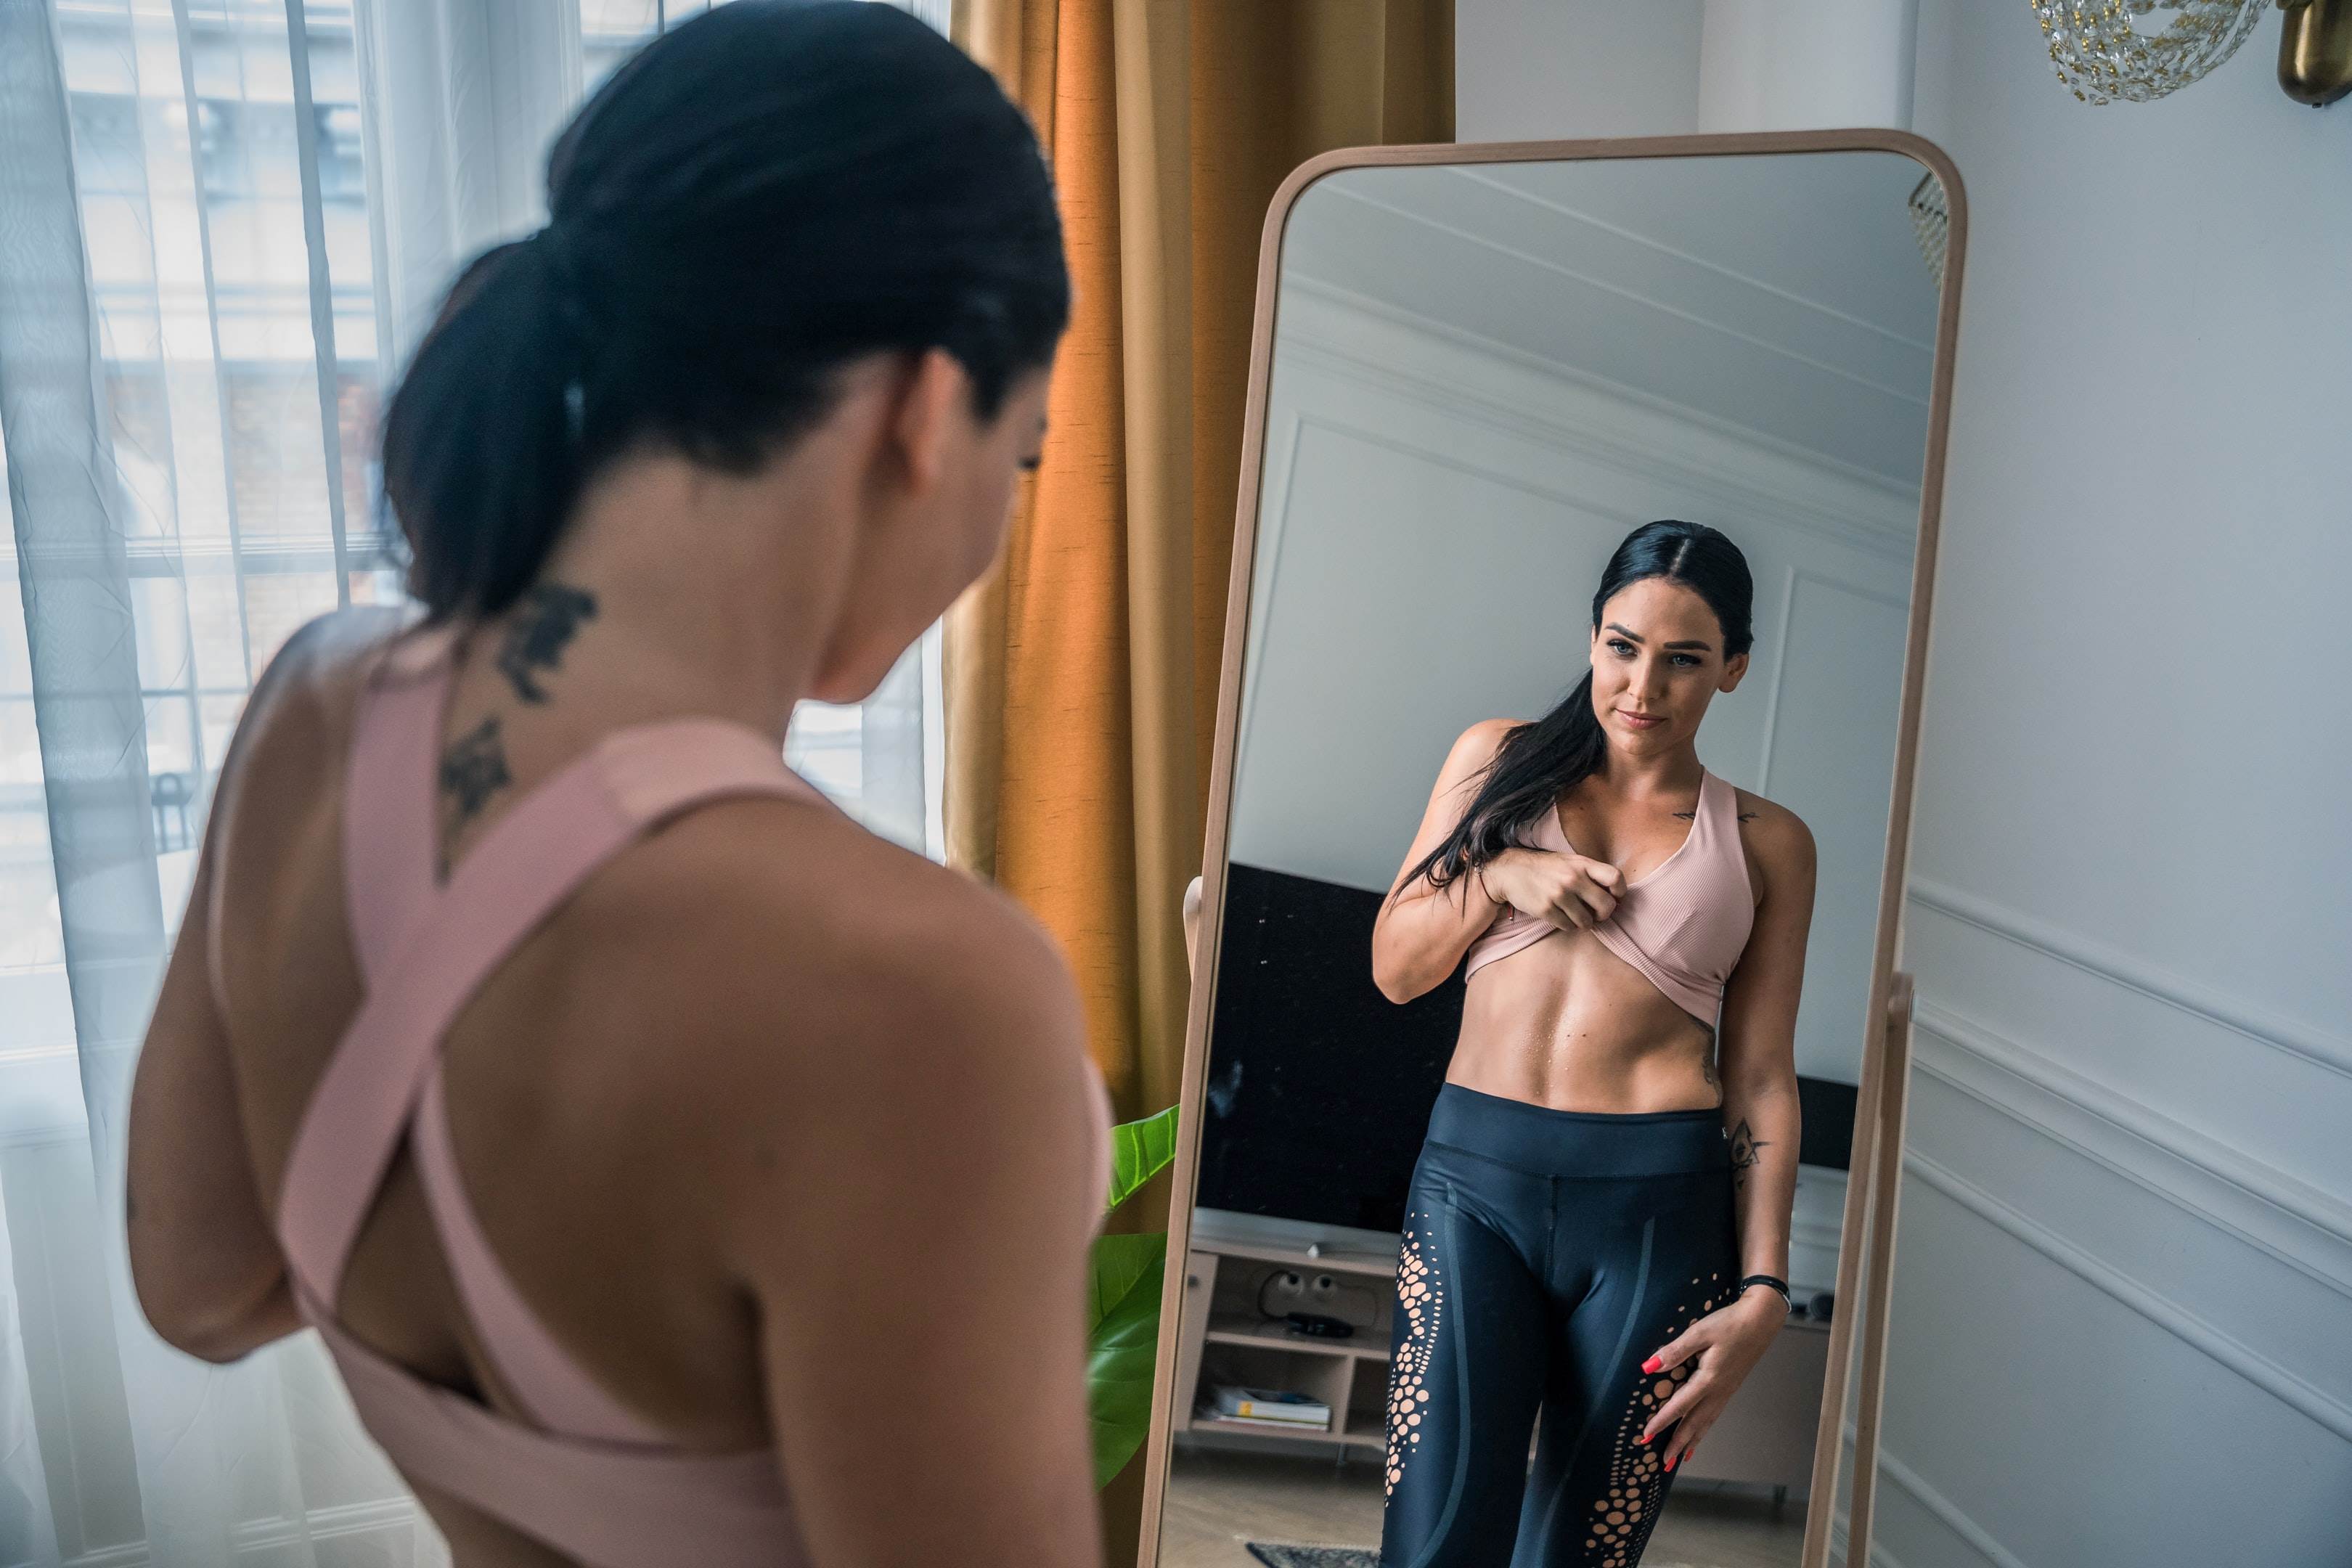 Žena ve fitness úboru stojí před zrcadlem. Částečně si vyhrnuje sportovní podprsenku a pozoruje svůj štíhlí pas.